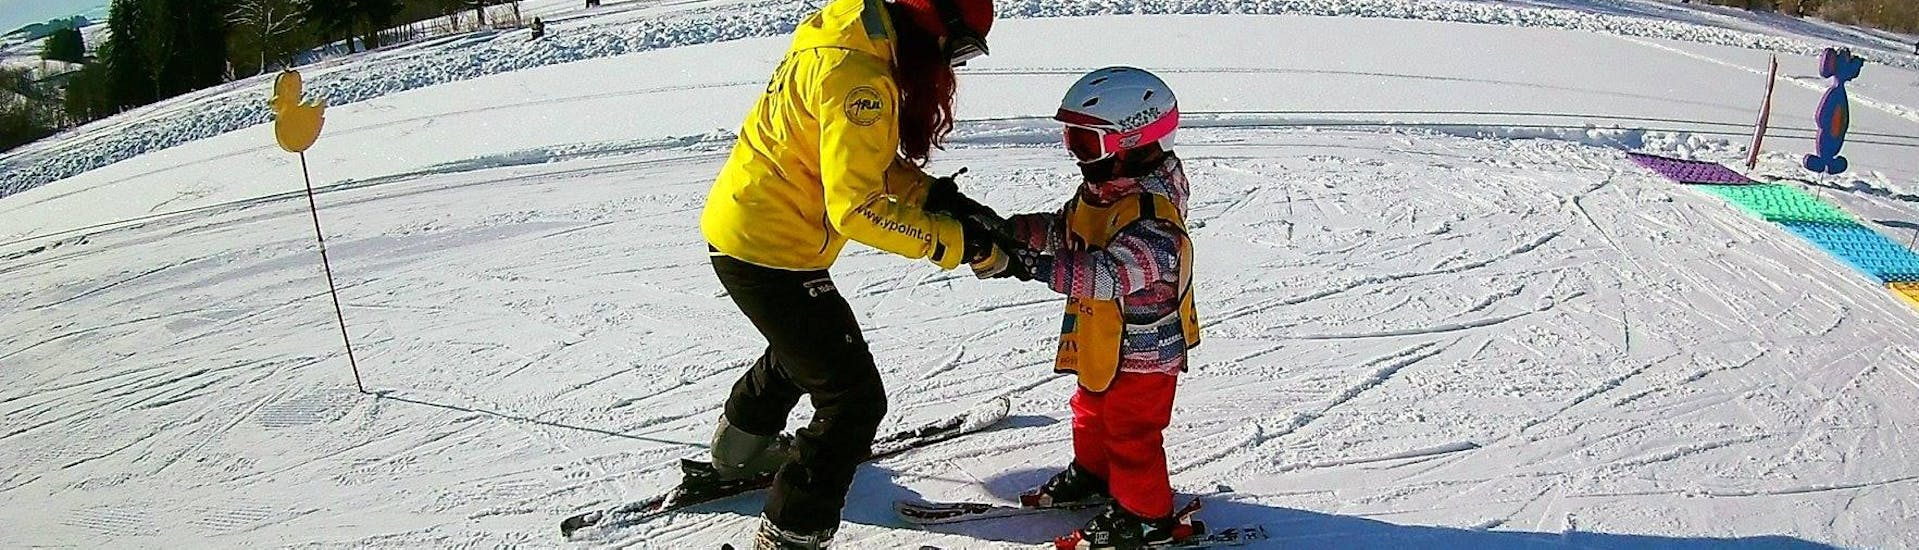 Lezioni private di sci per bambini per tutti i livelli con Yellow Point Špindlerův Mlýn.